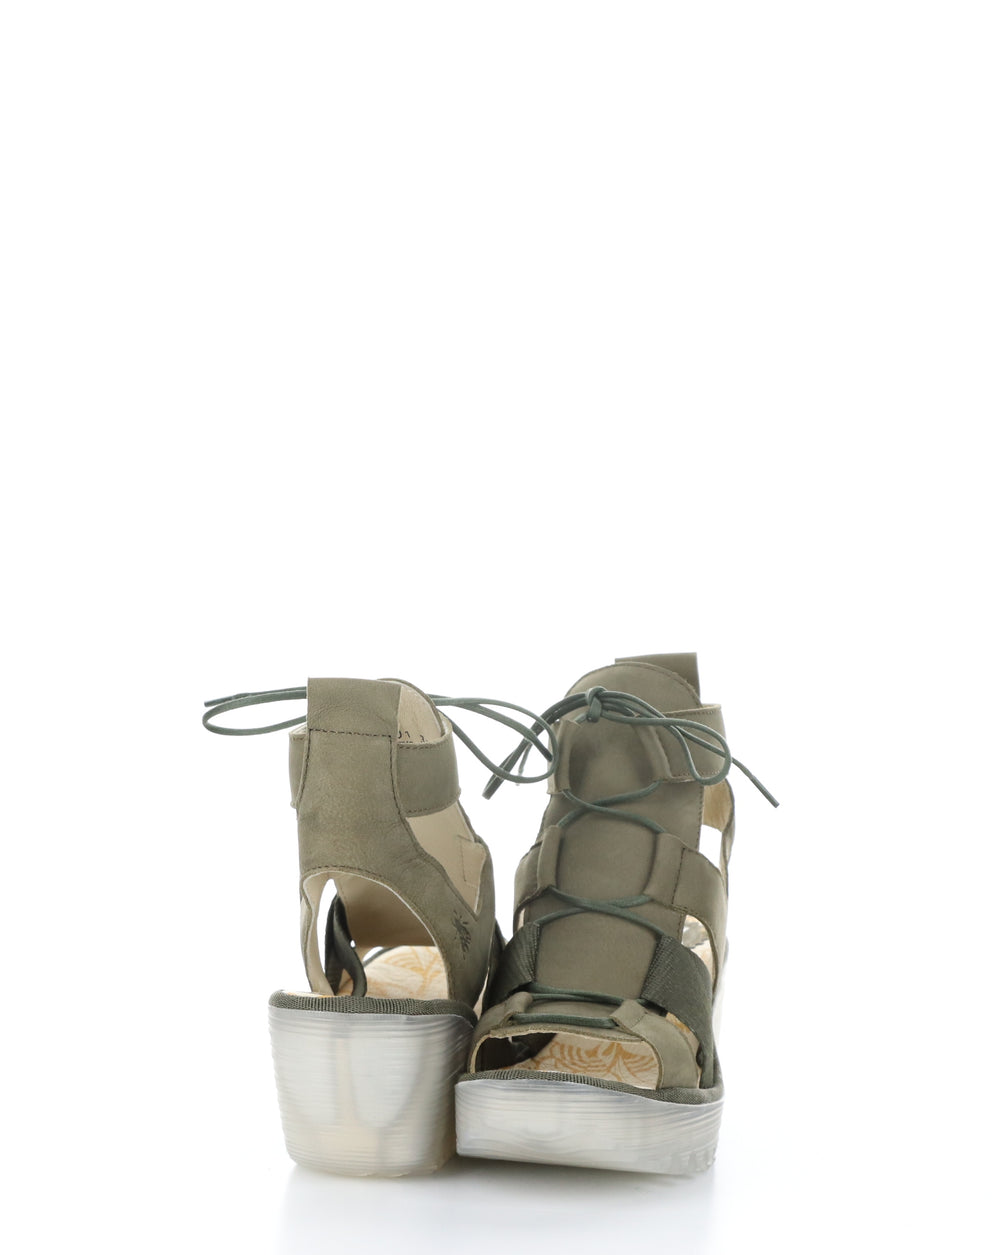 YACA413FLY 001 KHAKI Lace-up Sandals